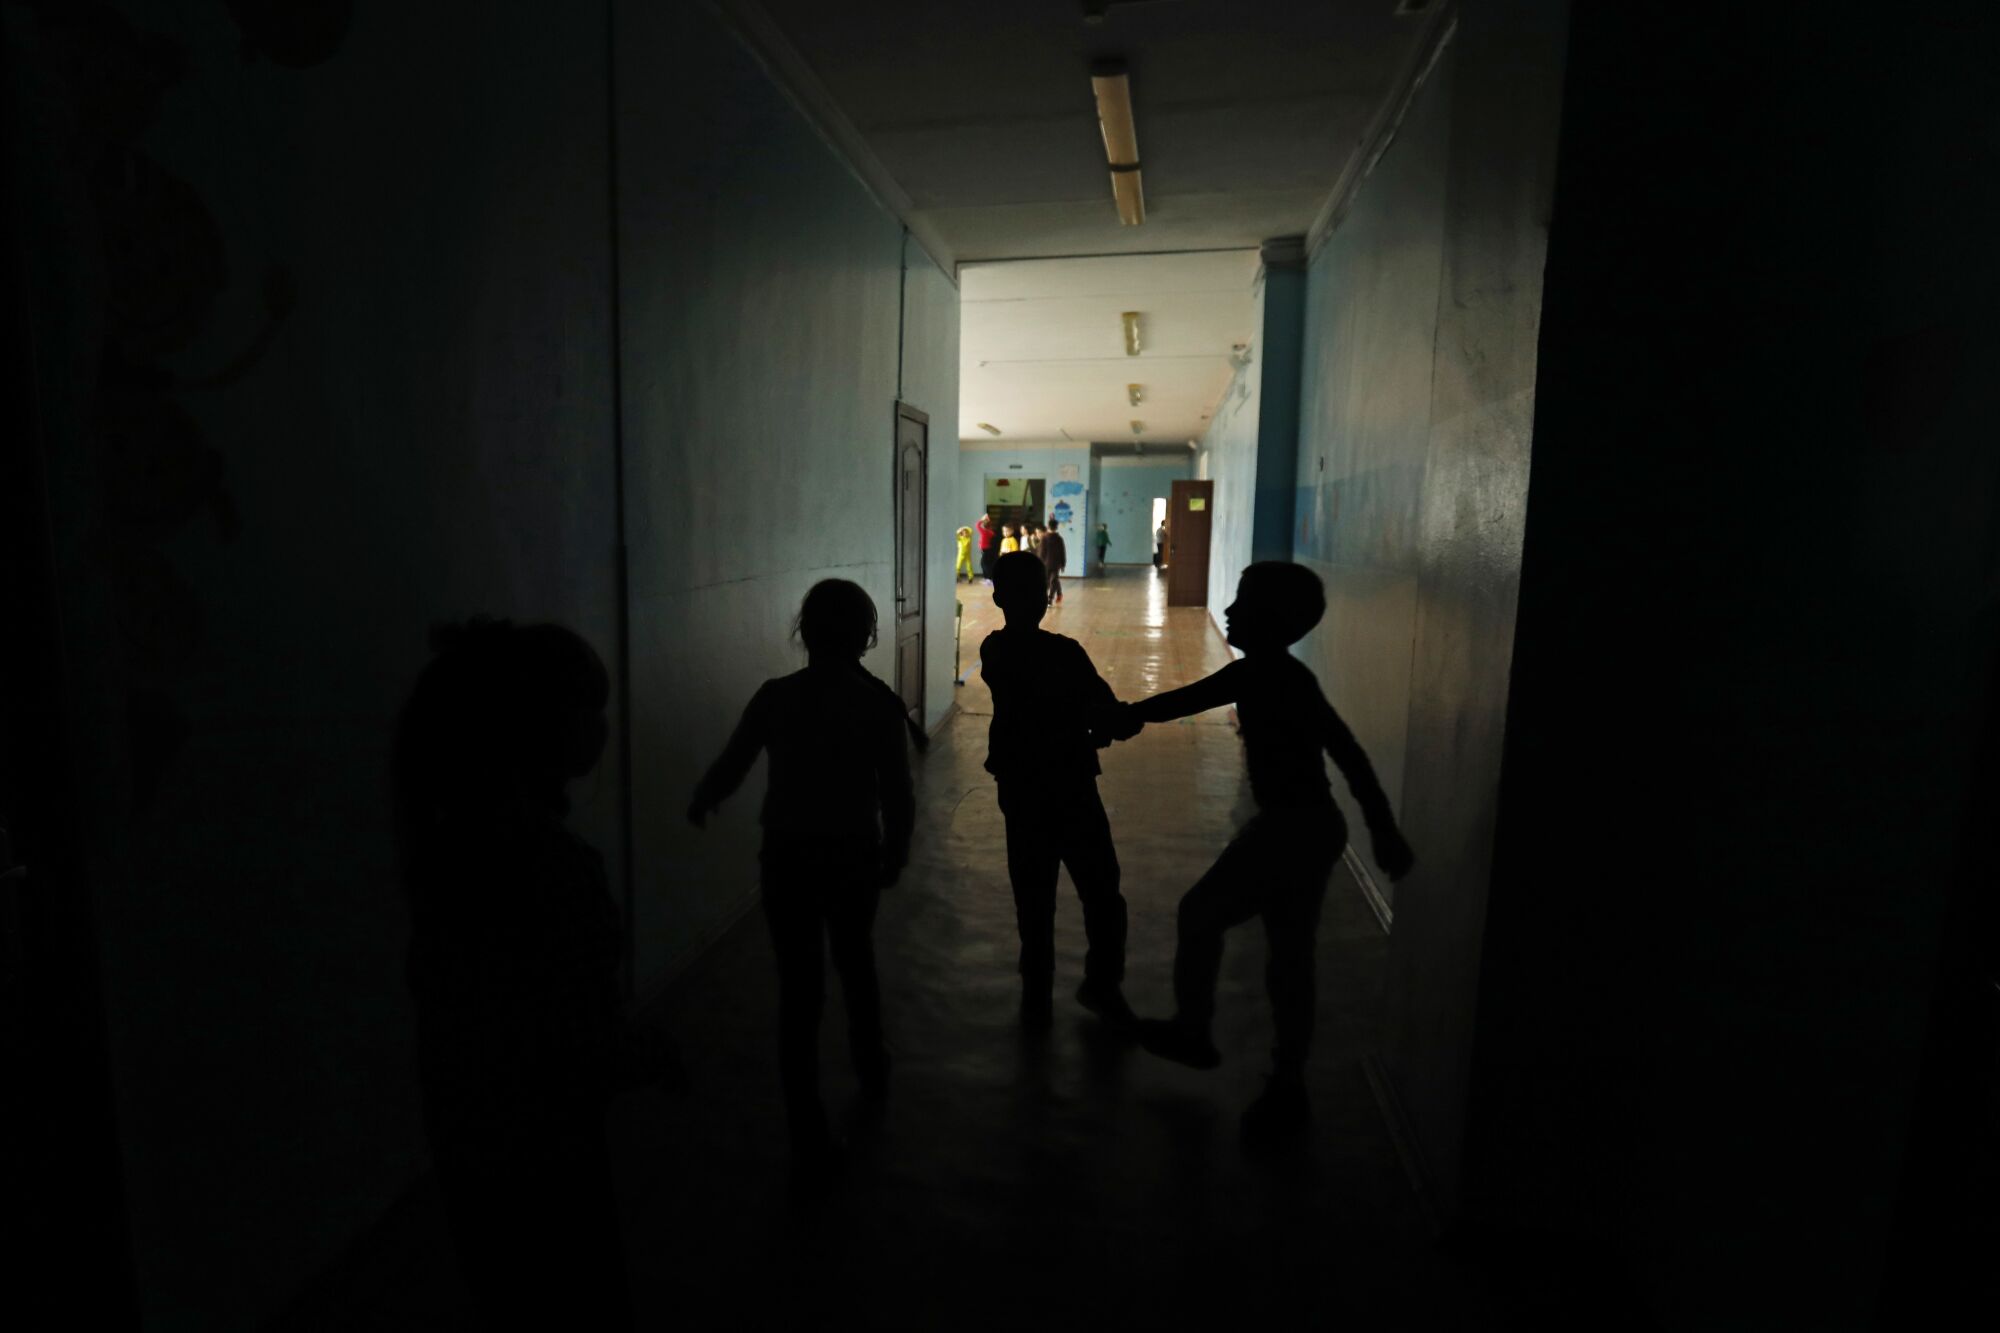 Children play in a dark hallway 